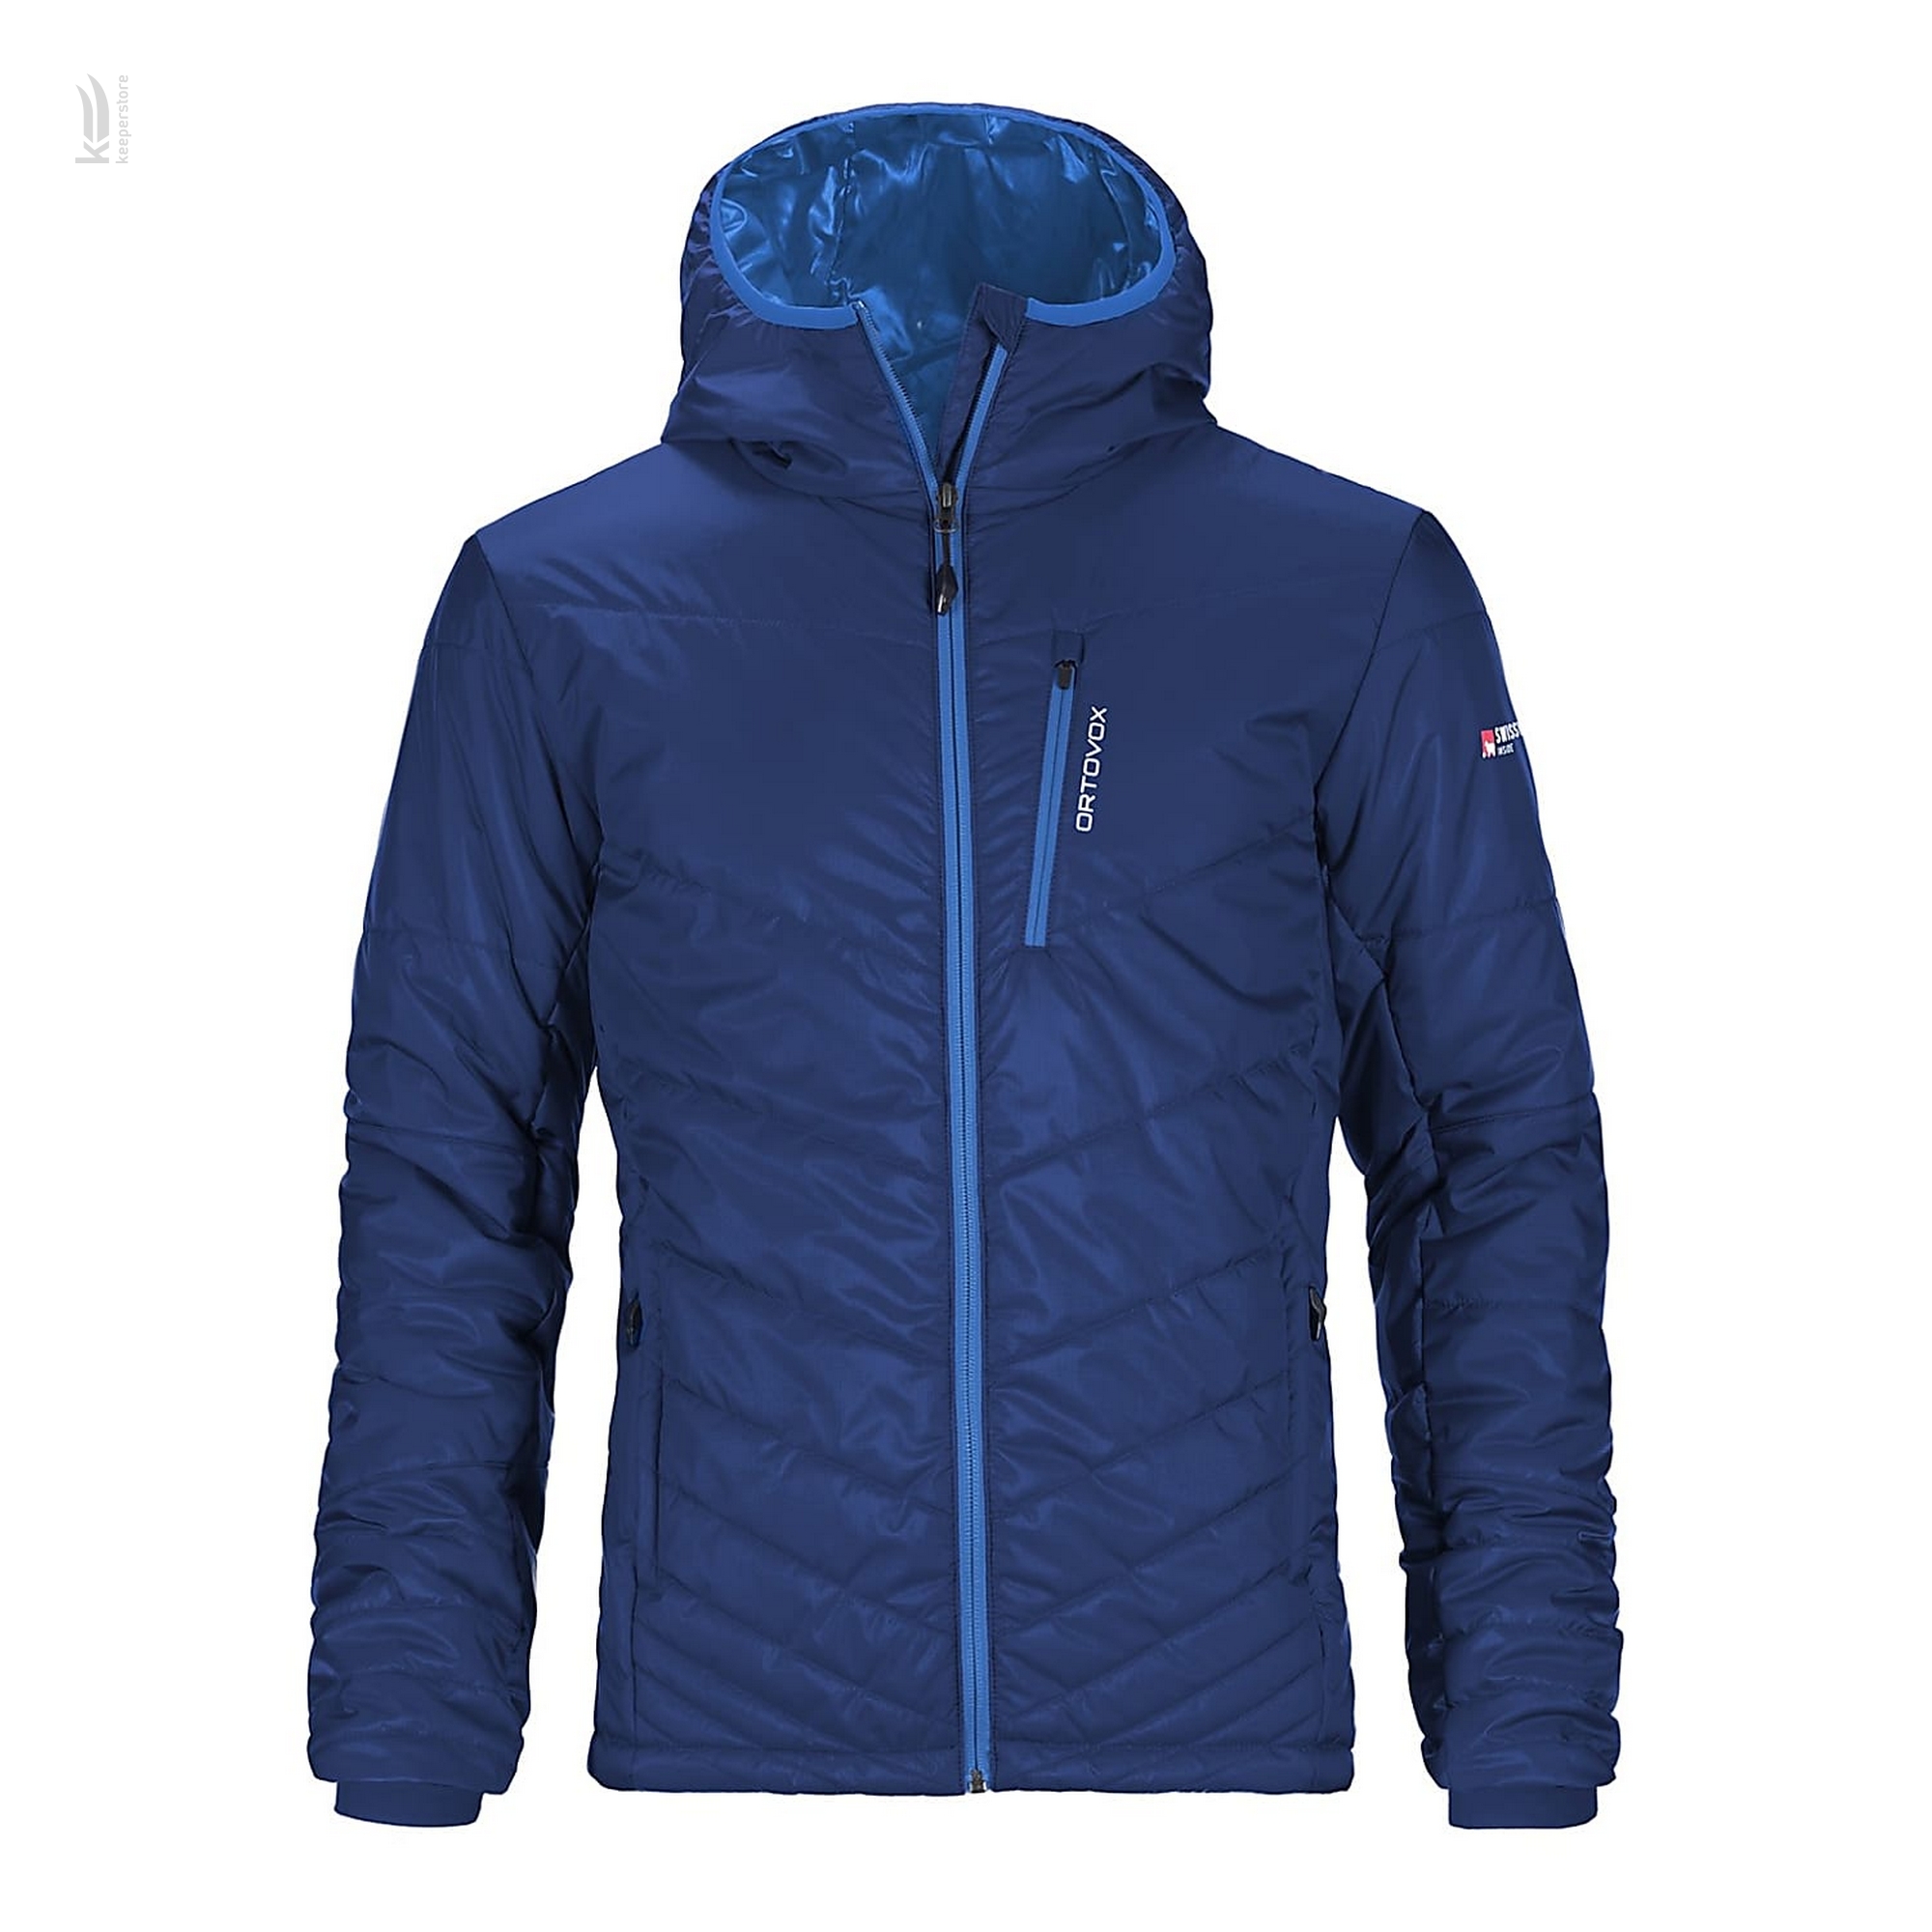 Фрірайд куртка Ortovox Swisswool Piz Bianco Jacket Strong Blue M